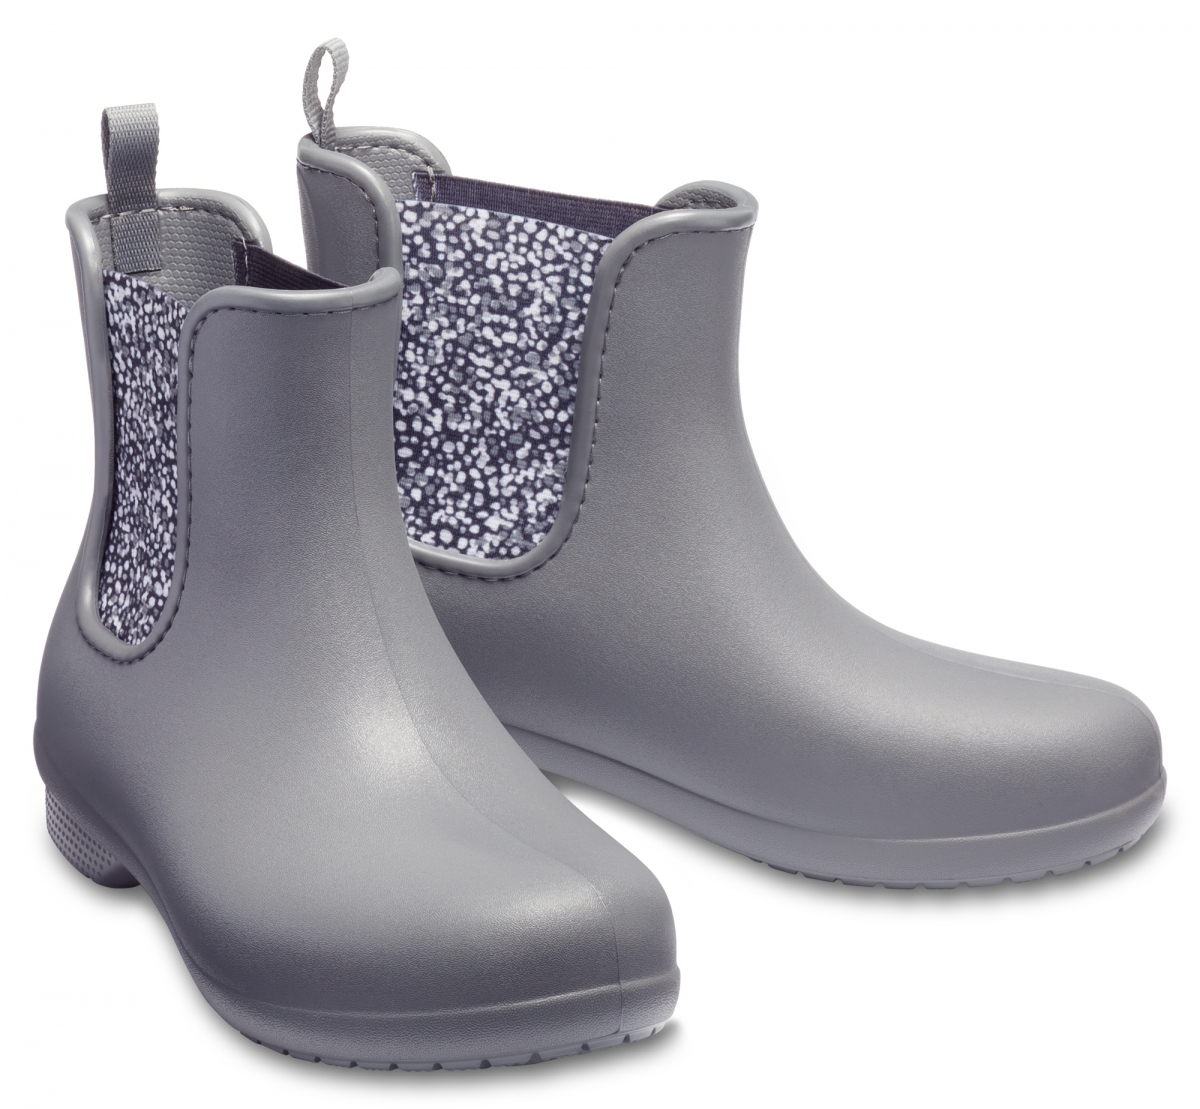 Dámské nízké holínky Crocs Freesail Chelsea Boot Women Dots jako lehká a elegantní obuv do města